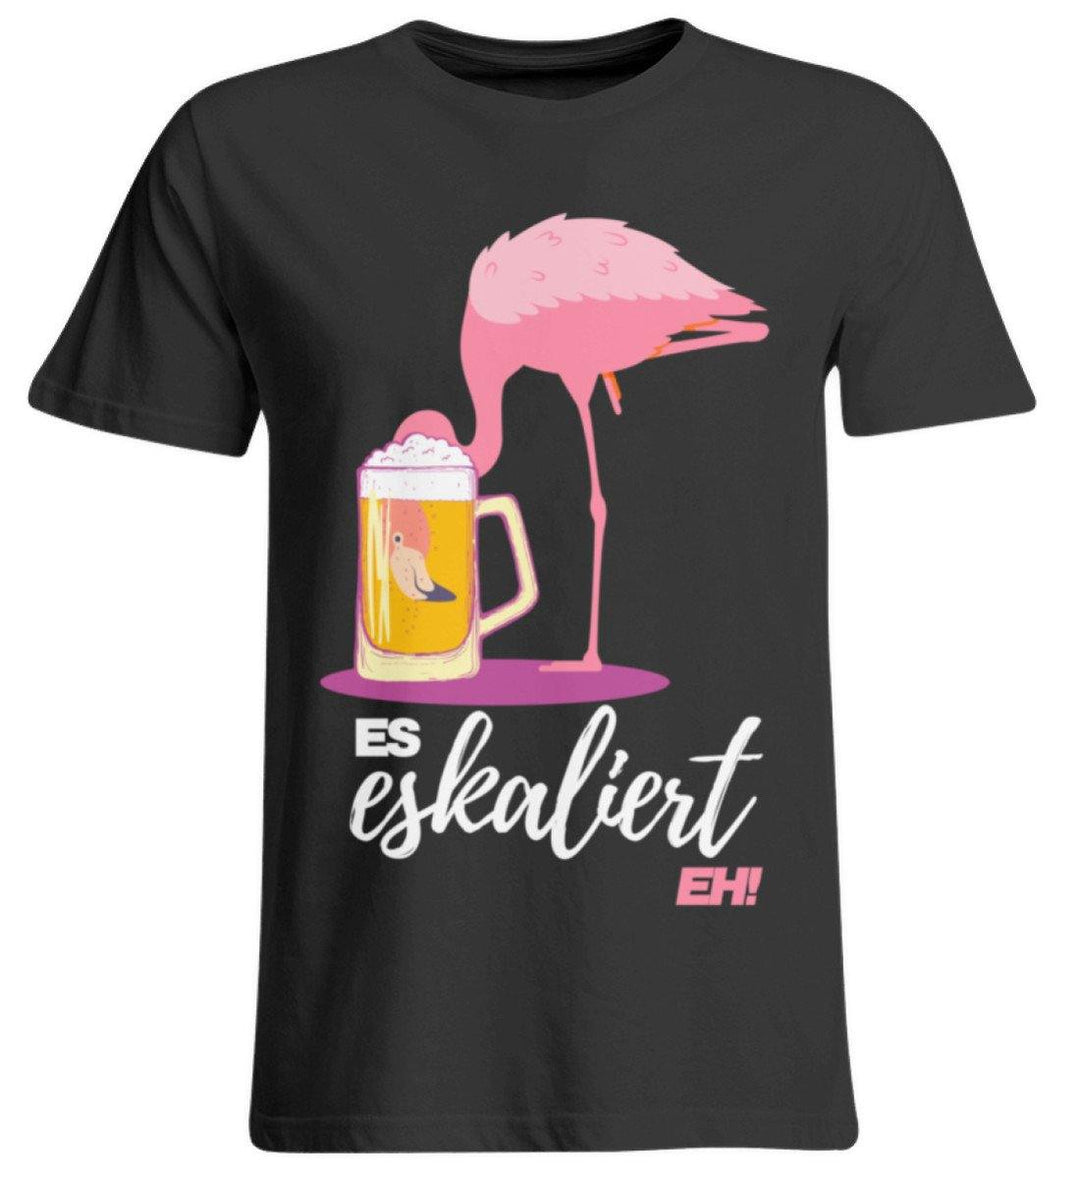 Es Eskaliert Eh - Flamingo  - Übergrößenshirt - Words on Shirts Sag es mit dem Mittelfinger Shirts Hoodies Sweatshirt Taschen Gymsack Spruch Sprüche Statement